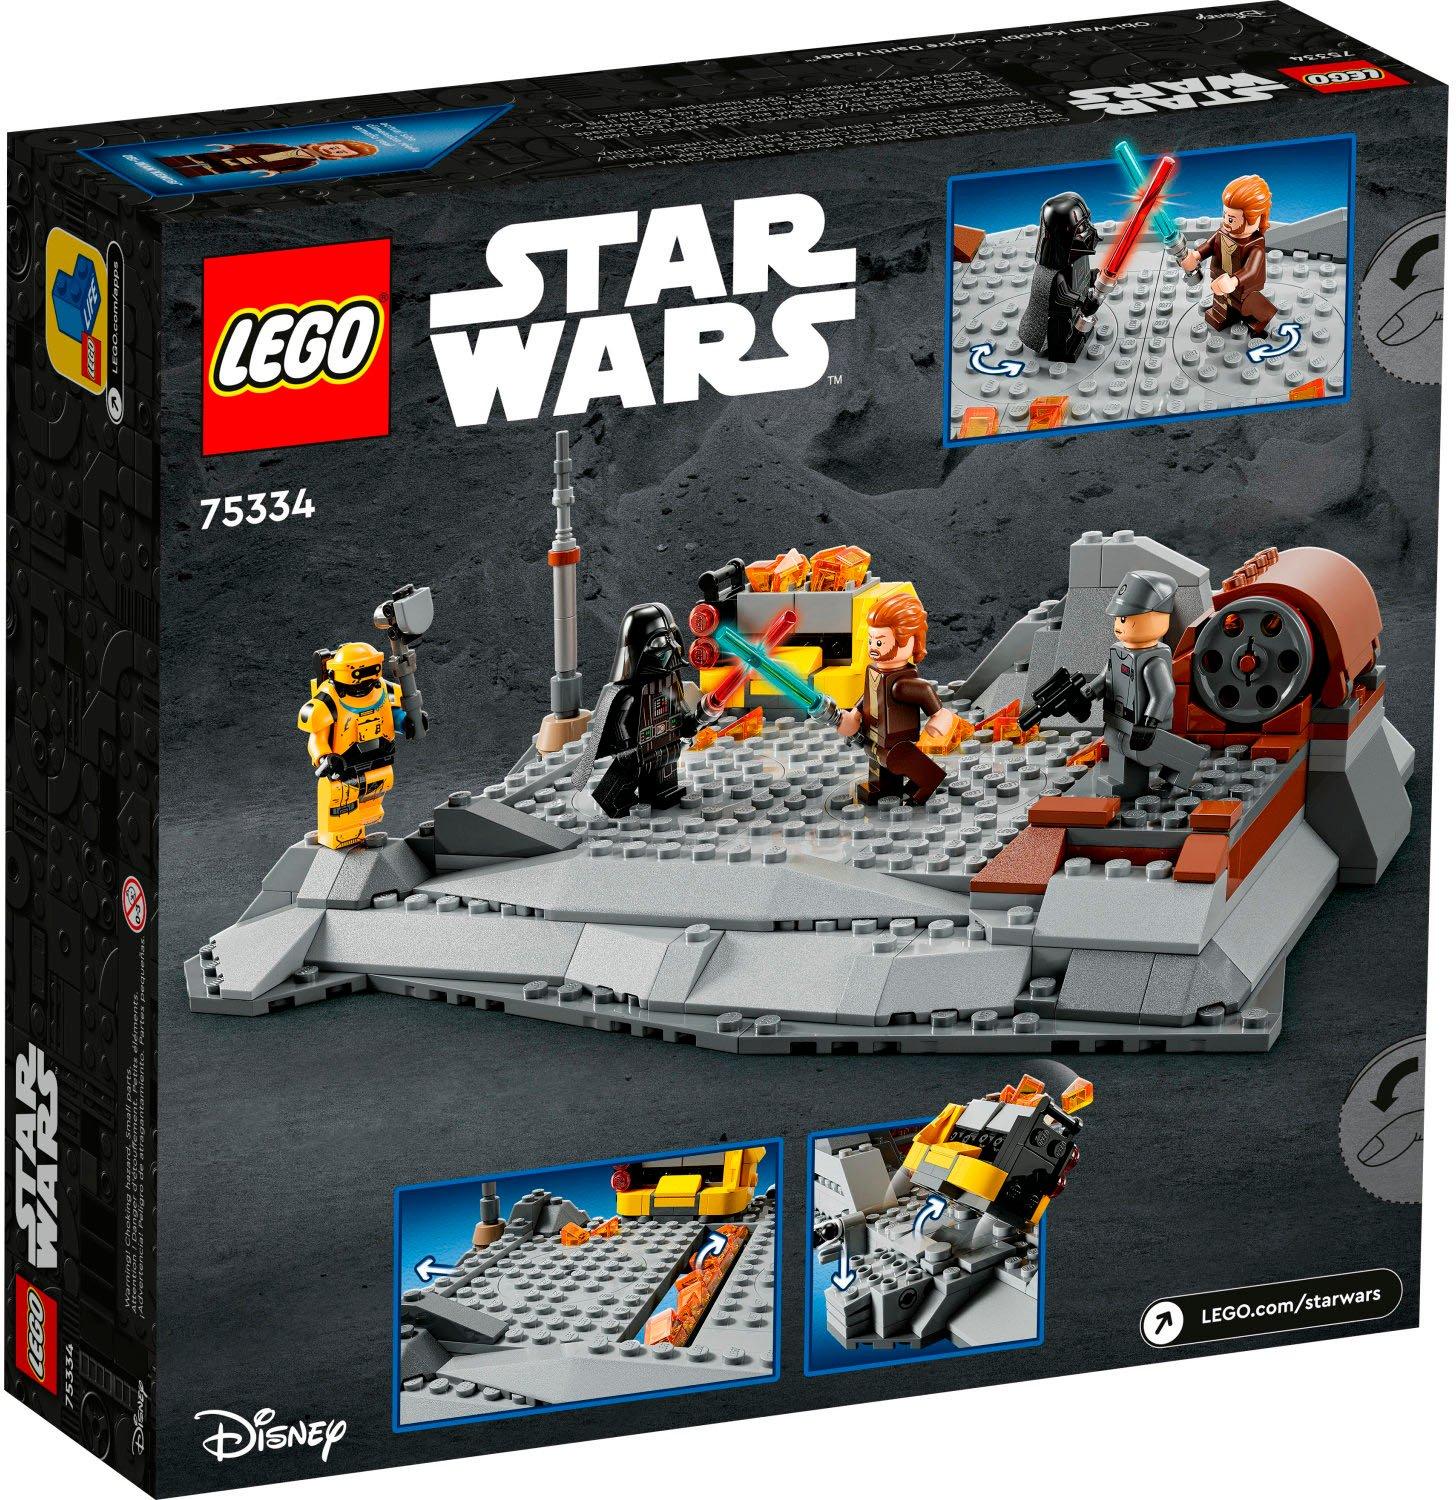 LEGO Star Wars Obi Wan Kenobi vs Darth Vader 75334 Building Kit